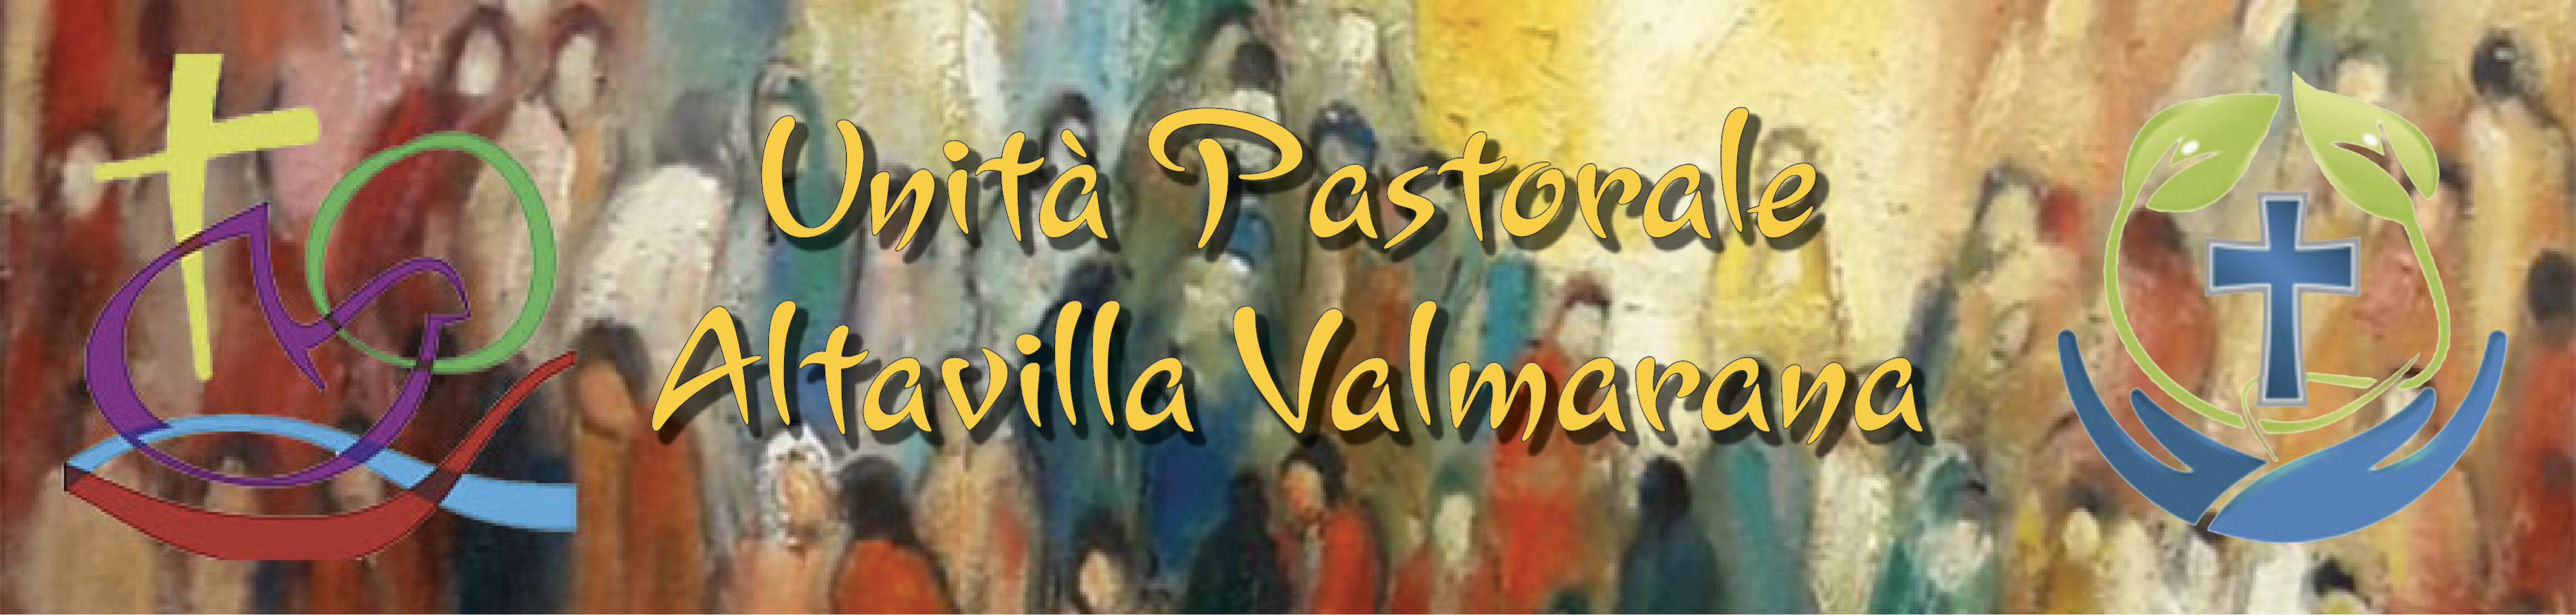 Unità Pastorale di Altavilla  Valmarana